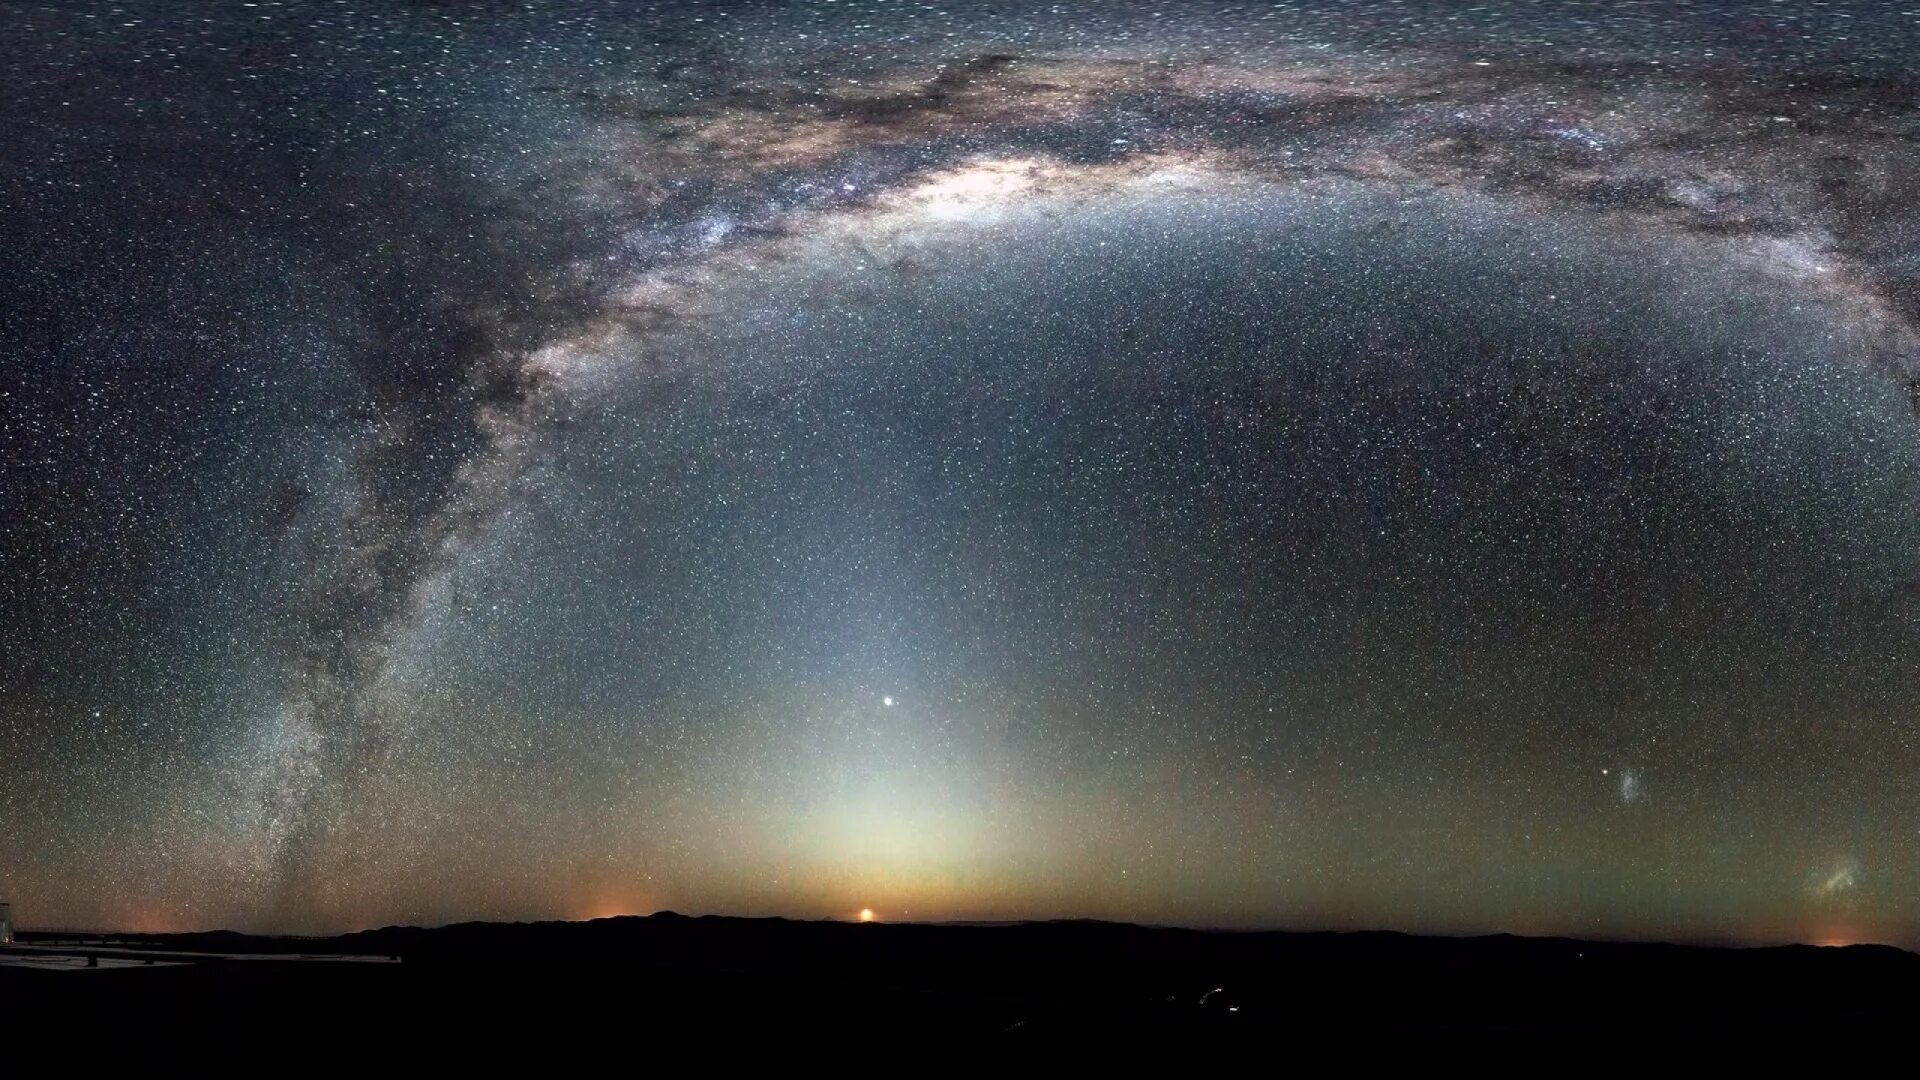 Наша галактика называется млечный путь. Наша Галактика Млечный путь. Галактика в галактике Млечный путь. Наша Галактика Млечный путь фото. Милки Вэй Галактика.